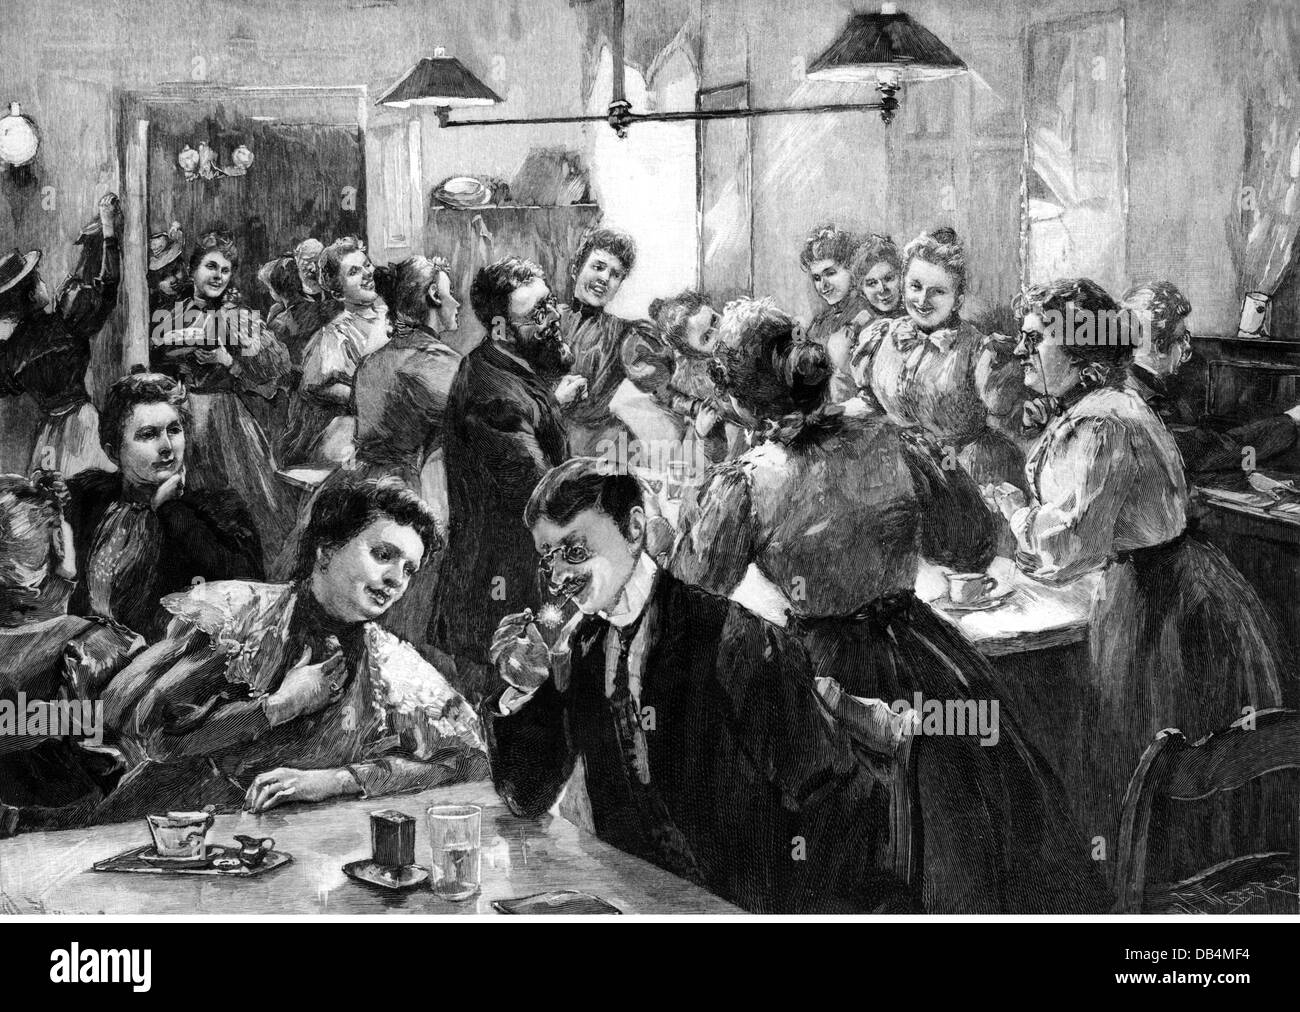 Gastronomie, taverne, 'at the veuves' association' (im Witwenverein), après dessin par Werner Zehme, (1859 - UM 1924), gravure sur bois, par Weber, 1898, droits additionnels-Clearences-non disponible Banque D'Images